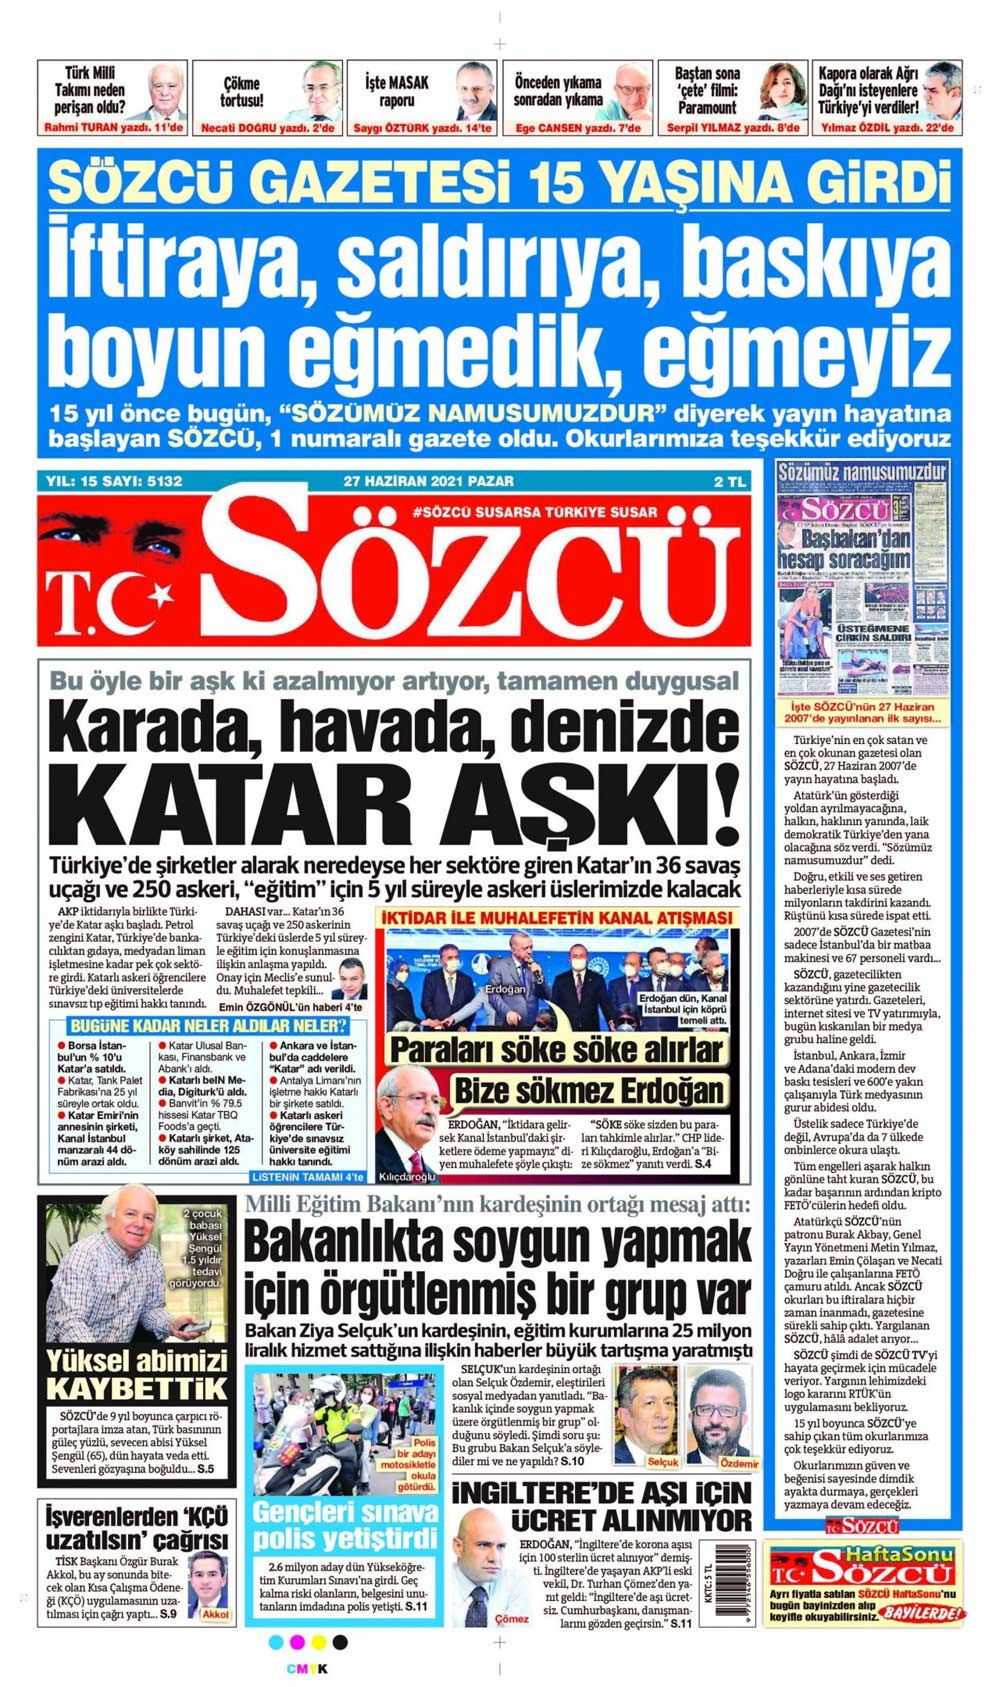 Kanal İstanbul için hangi gazete ne manşet attı Birgün, Karar ve Akit'in başlıkları dikkat çekti